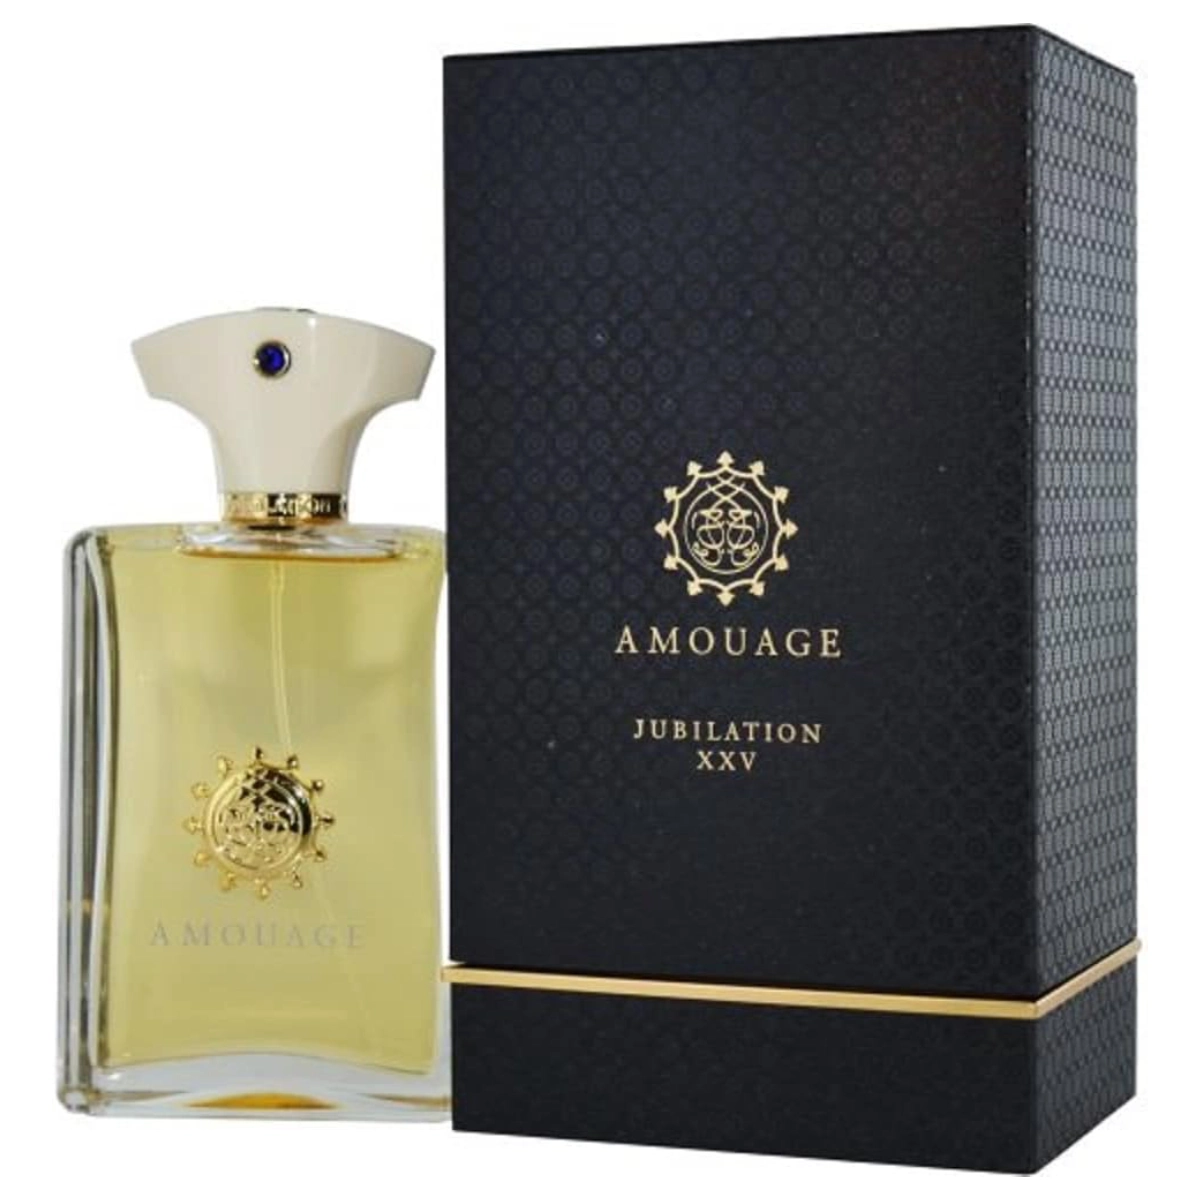 Amouage Jubilation XXV perfume bottle against a pristine white background